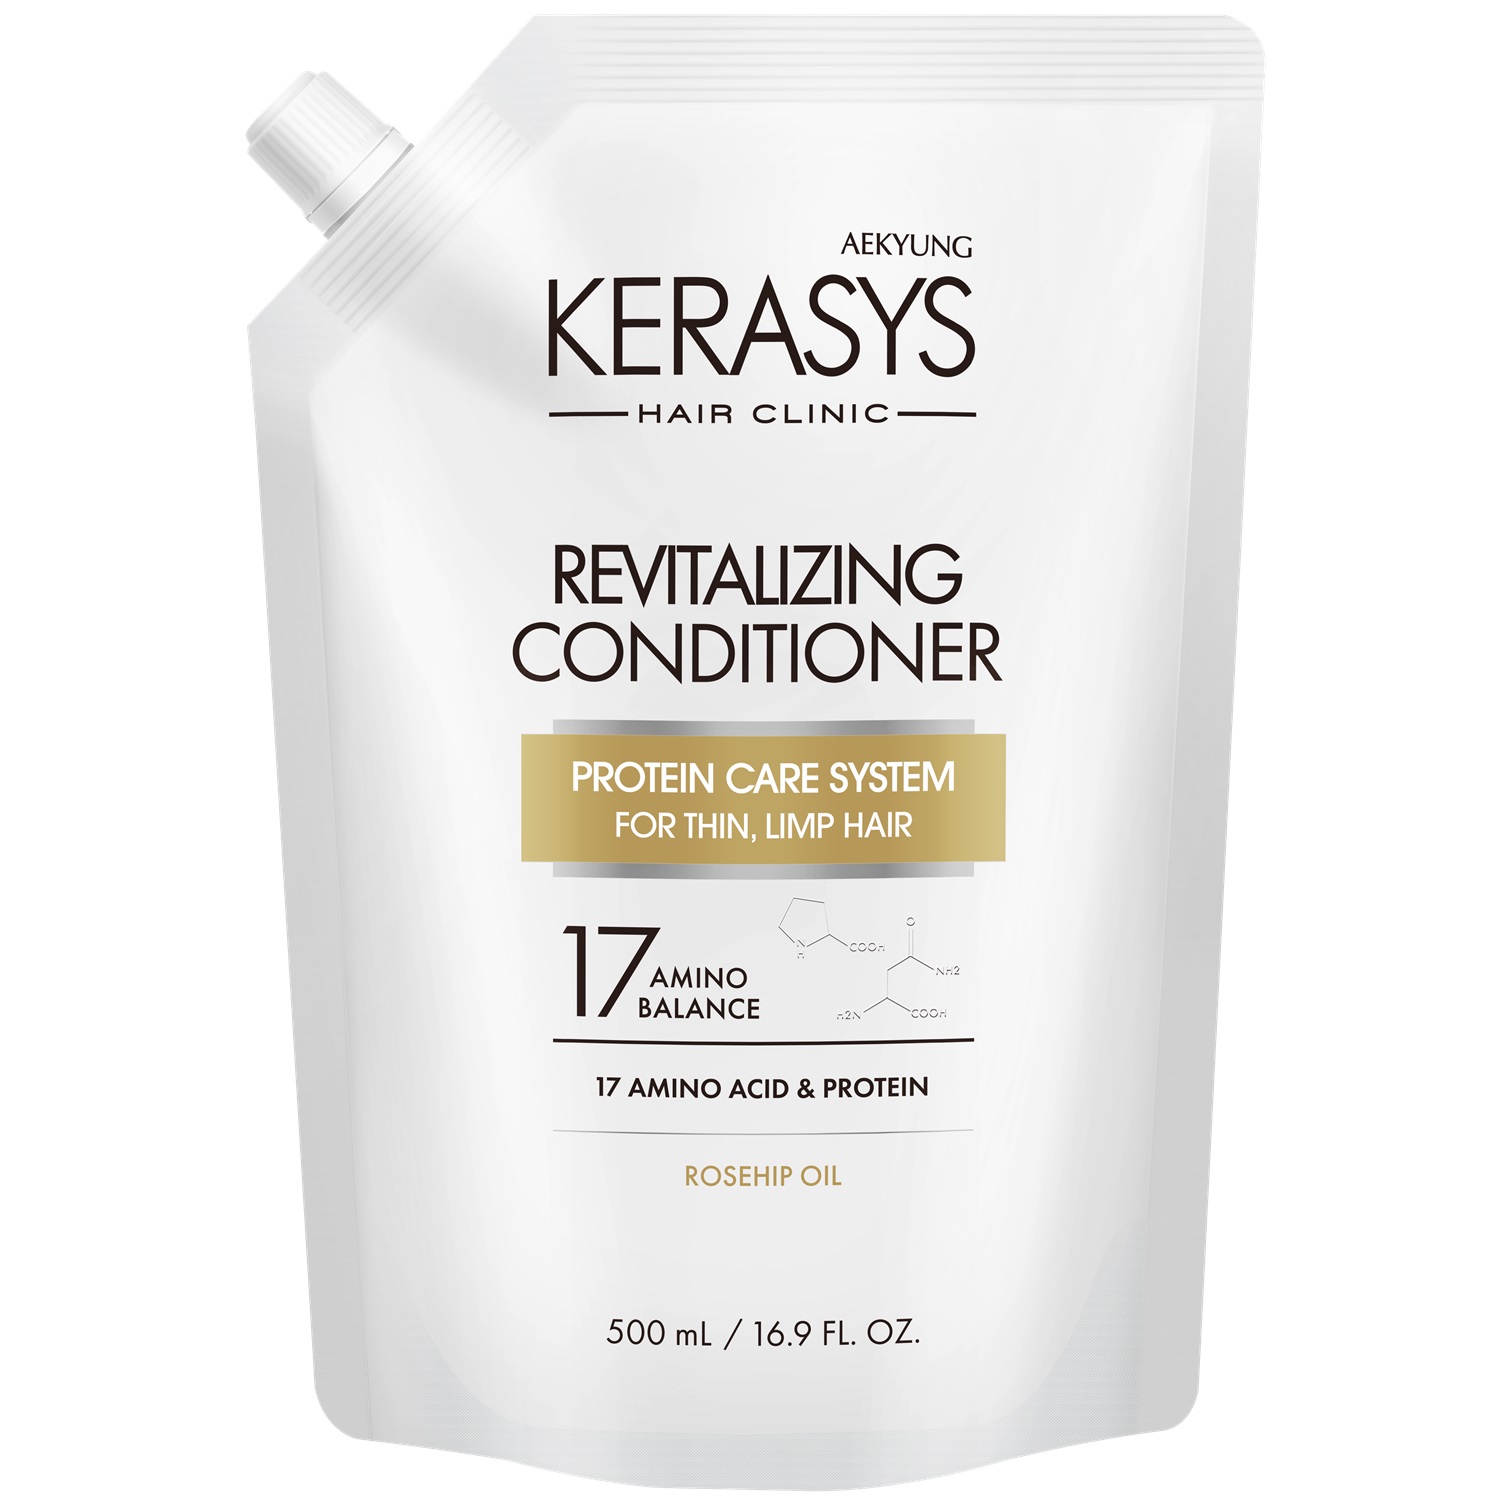 Kerasys Кондиционер оздоравливающий для волос, запасной блок, 500 мл (Kerasys, Hair Clinic)